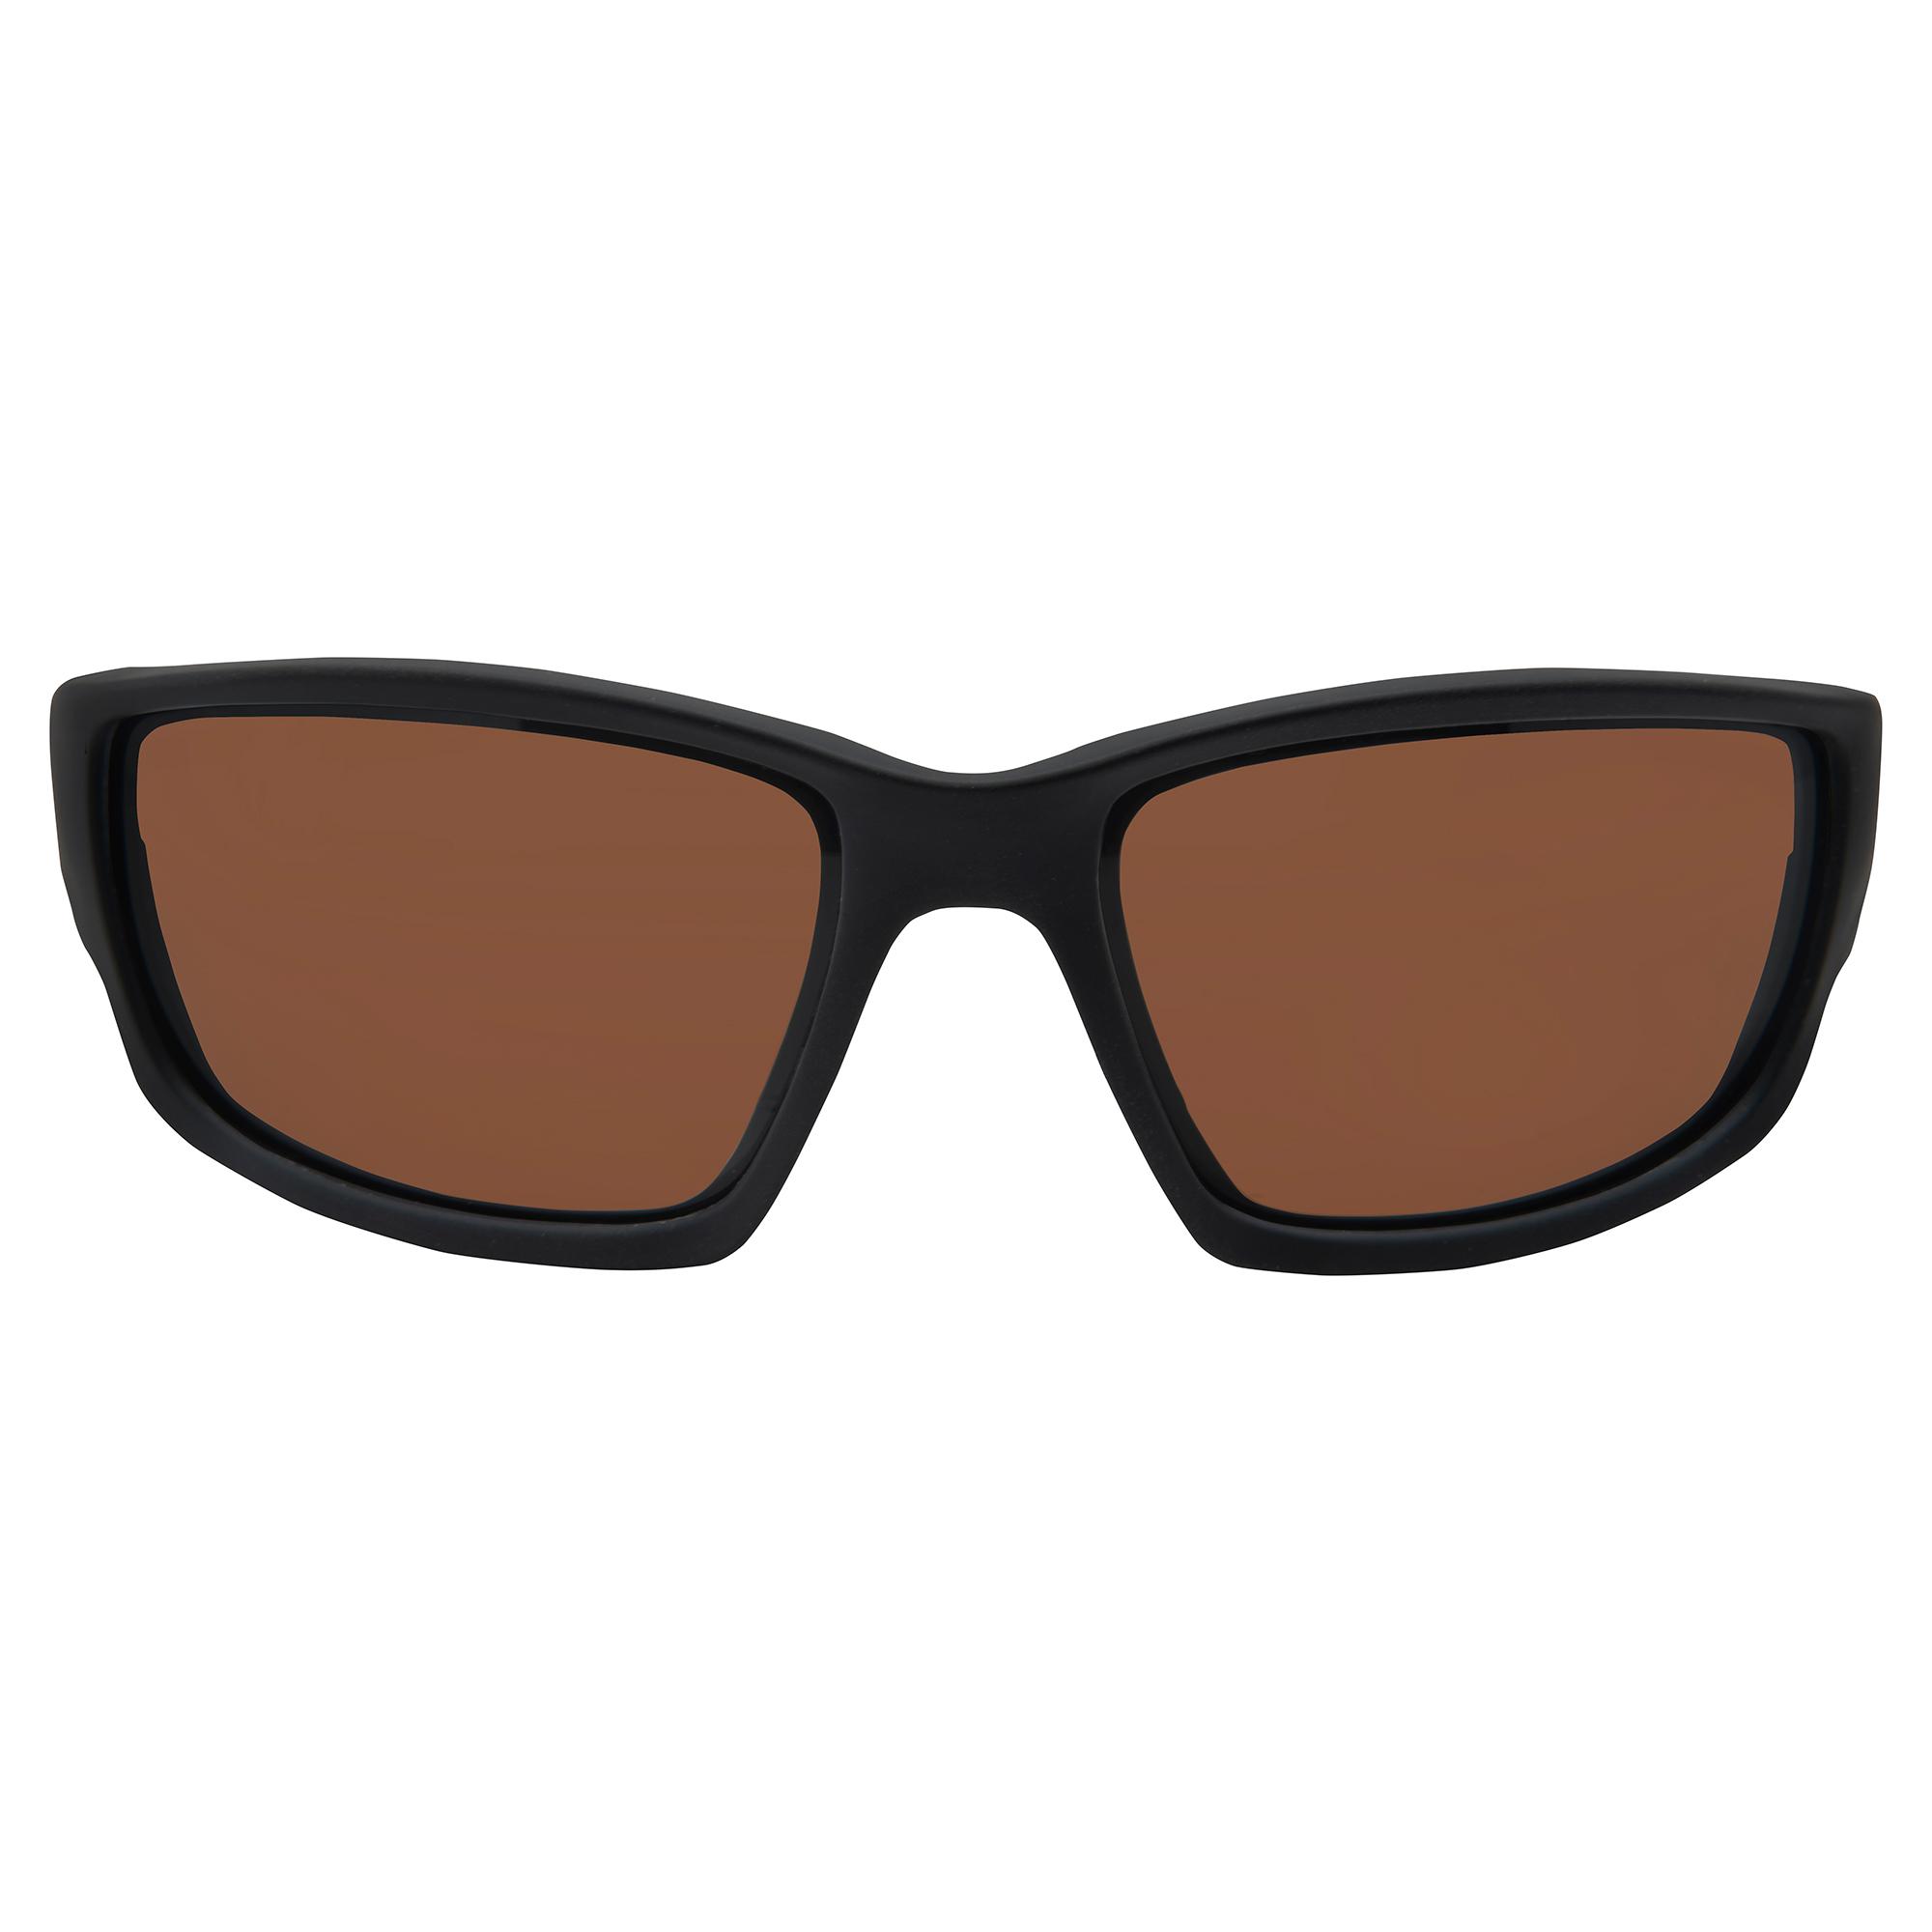 Edge Eyewear Kazbek Safety/Sun Glasses Polarized Copper Driving Lens TSK215 